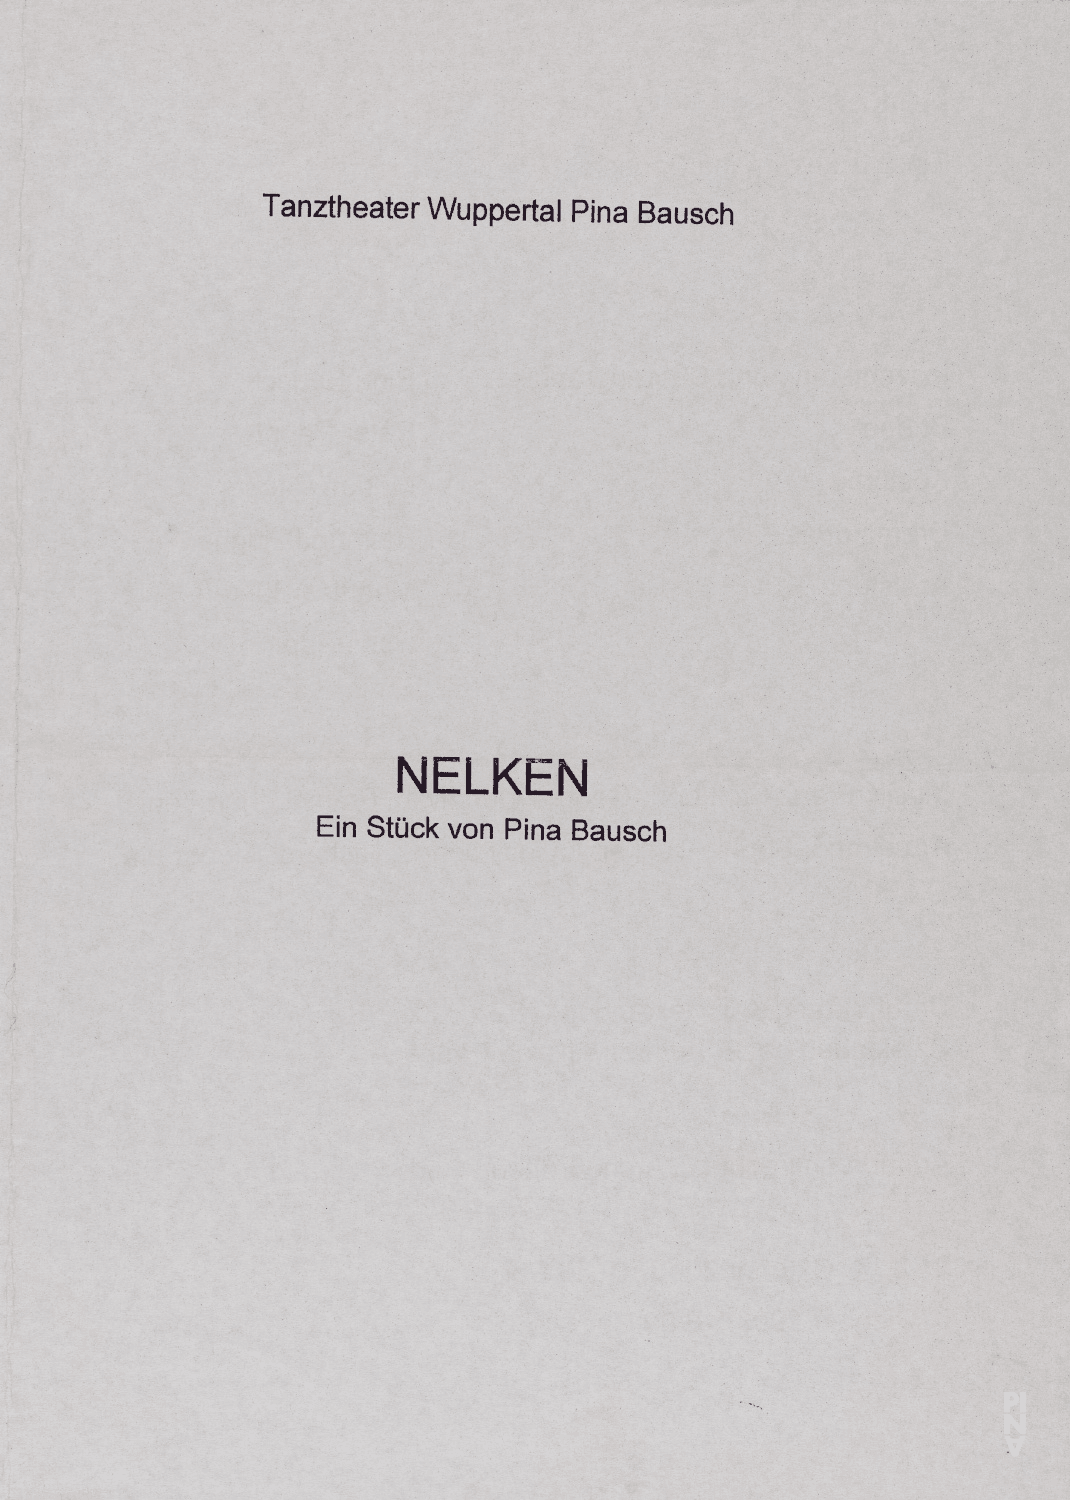 Programme pour « Nelken (Les œillets) » de Pina Bausch avec Tanztheater Wuppertal à Wuppertal, 2 oct. 2008 – 5 oct. 2008